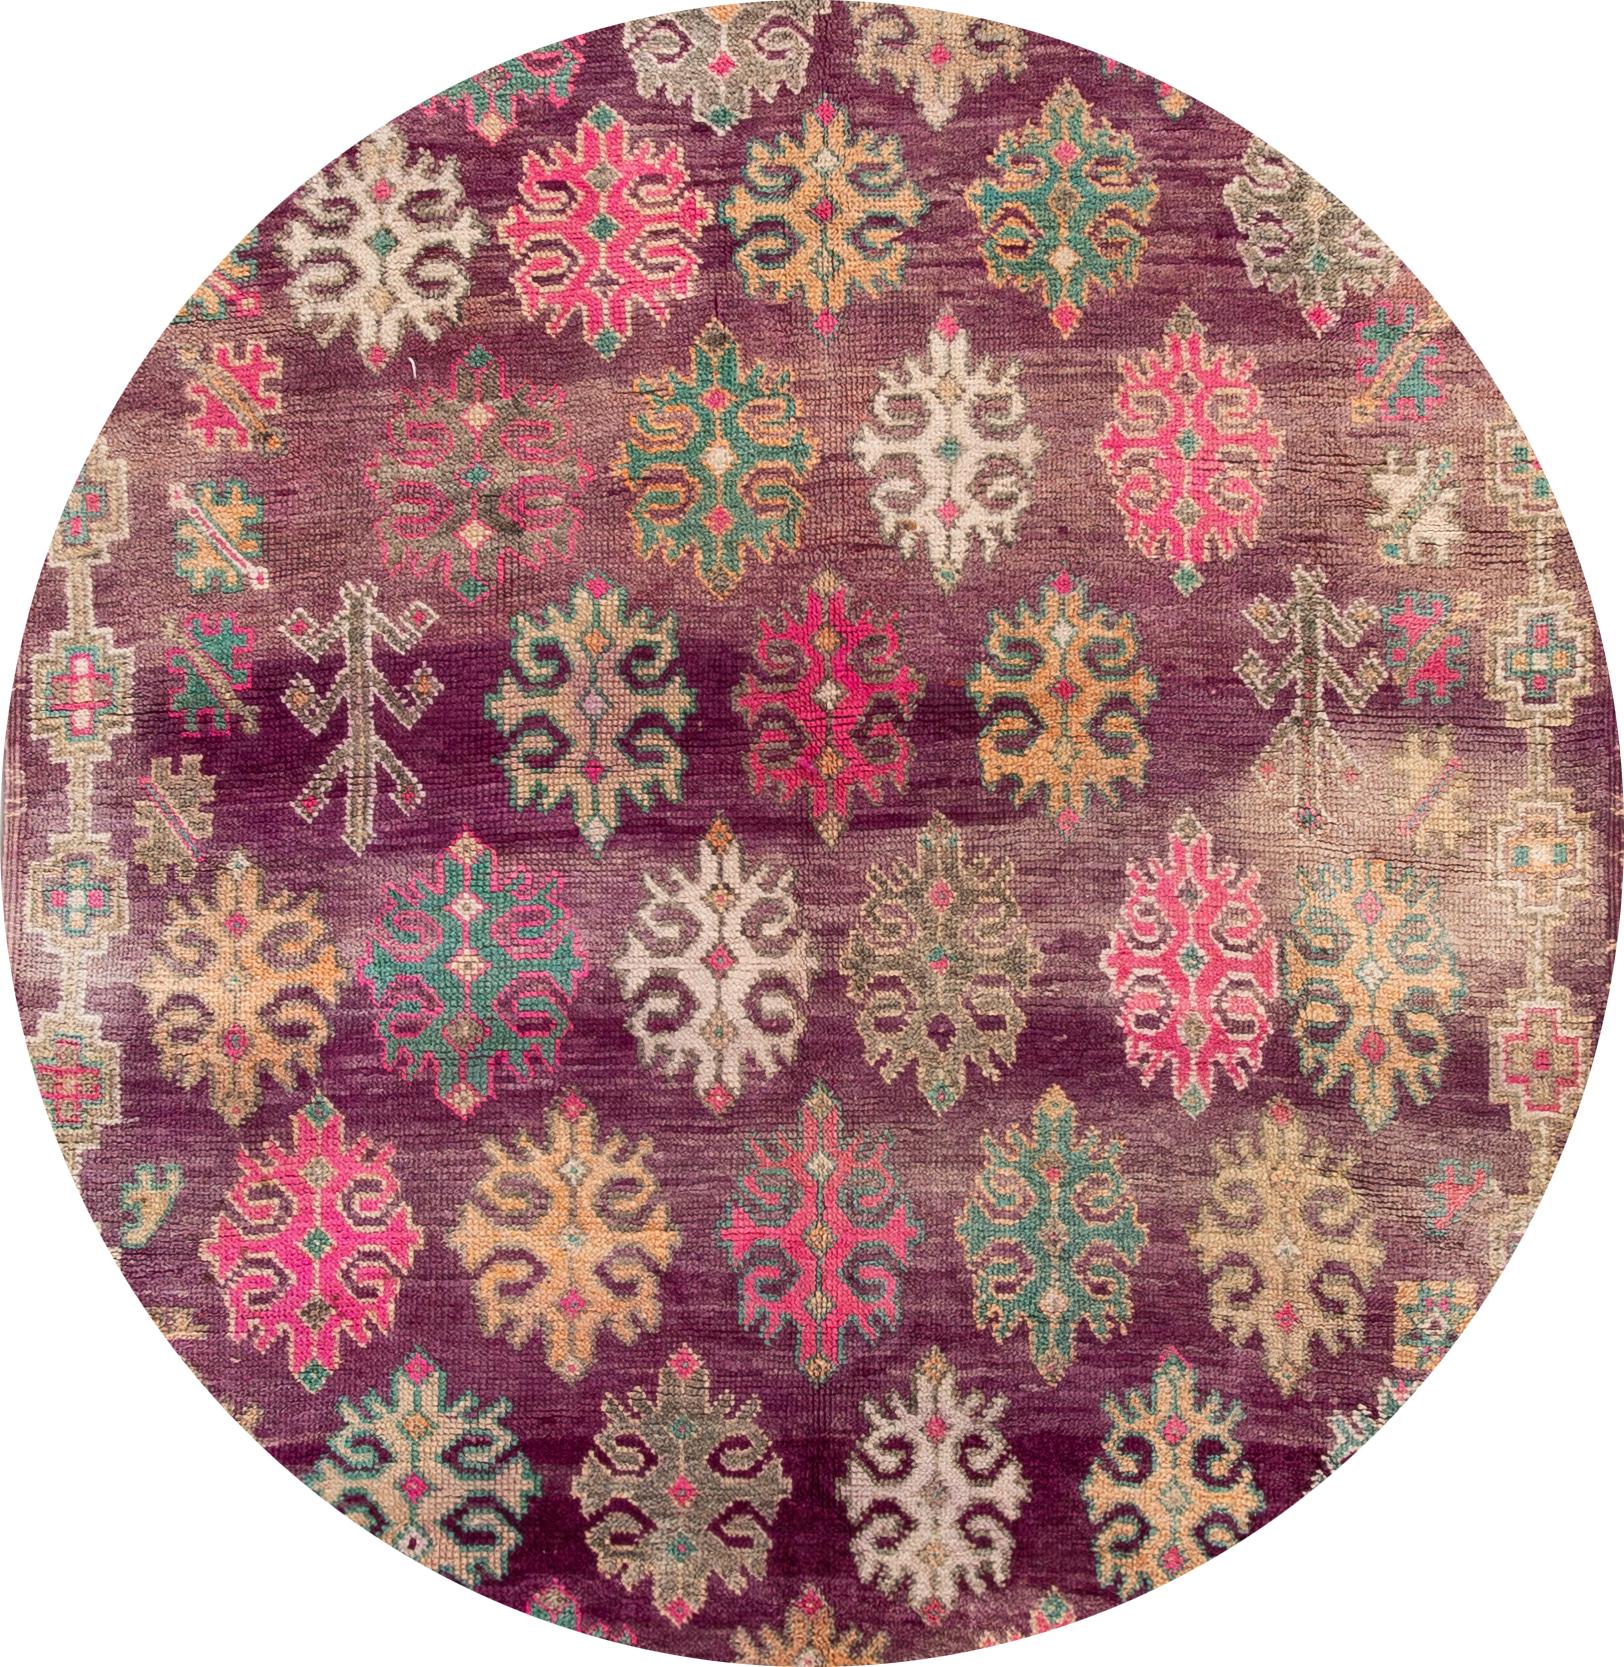 Magnifique tapis marocain en laine noué à la main. Ce tapis présente un champ violet avec des accents tribaux multicolores sur l'ensemble du motif,

vers 1960.

Ce tapis mesure 6' 2